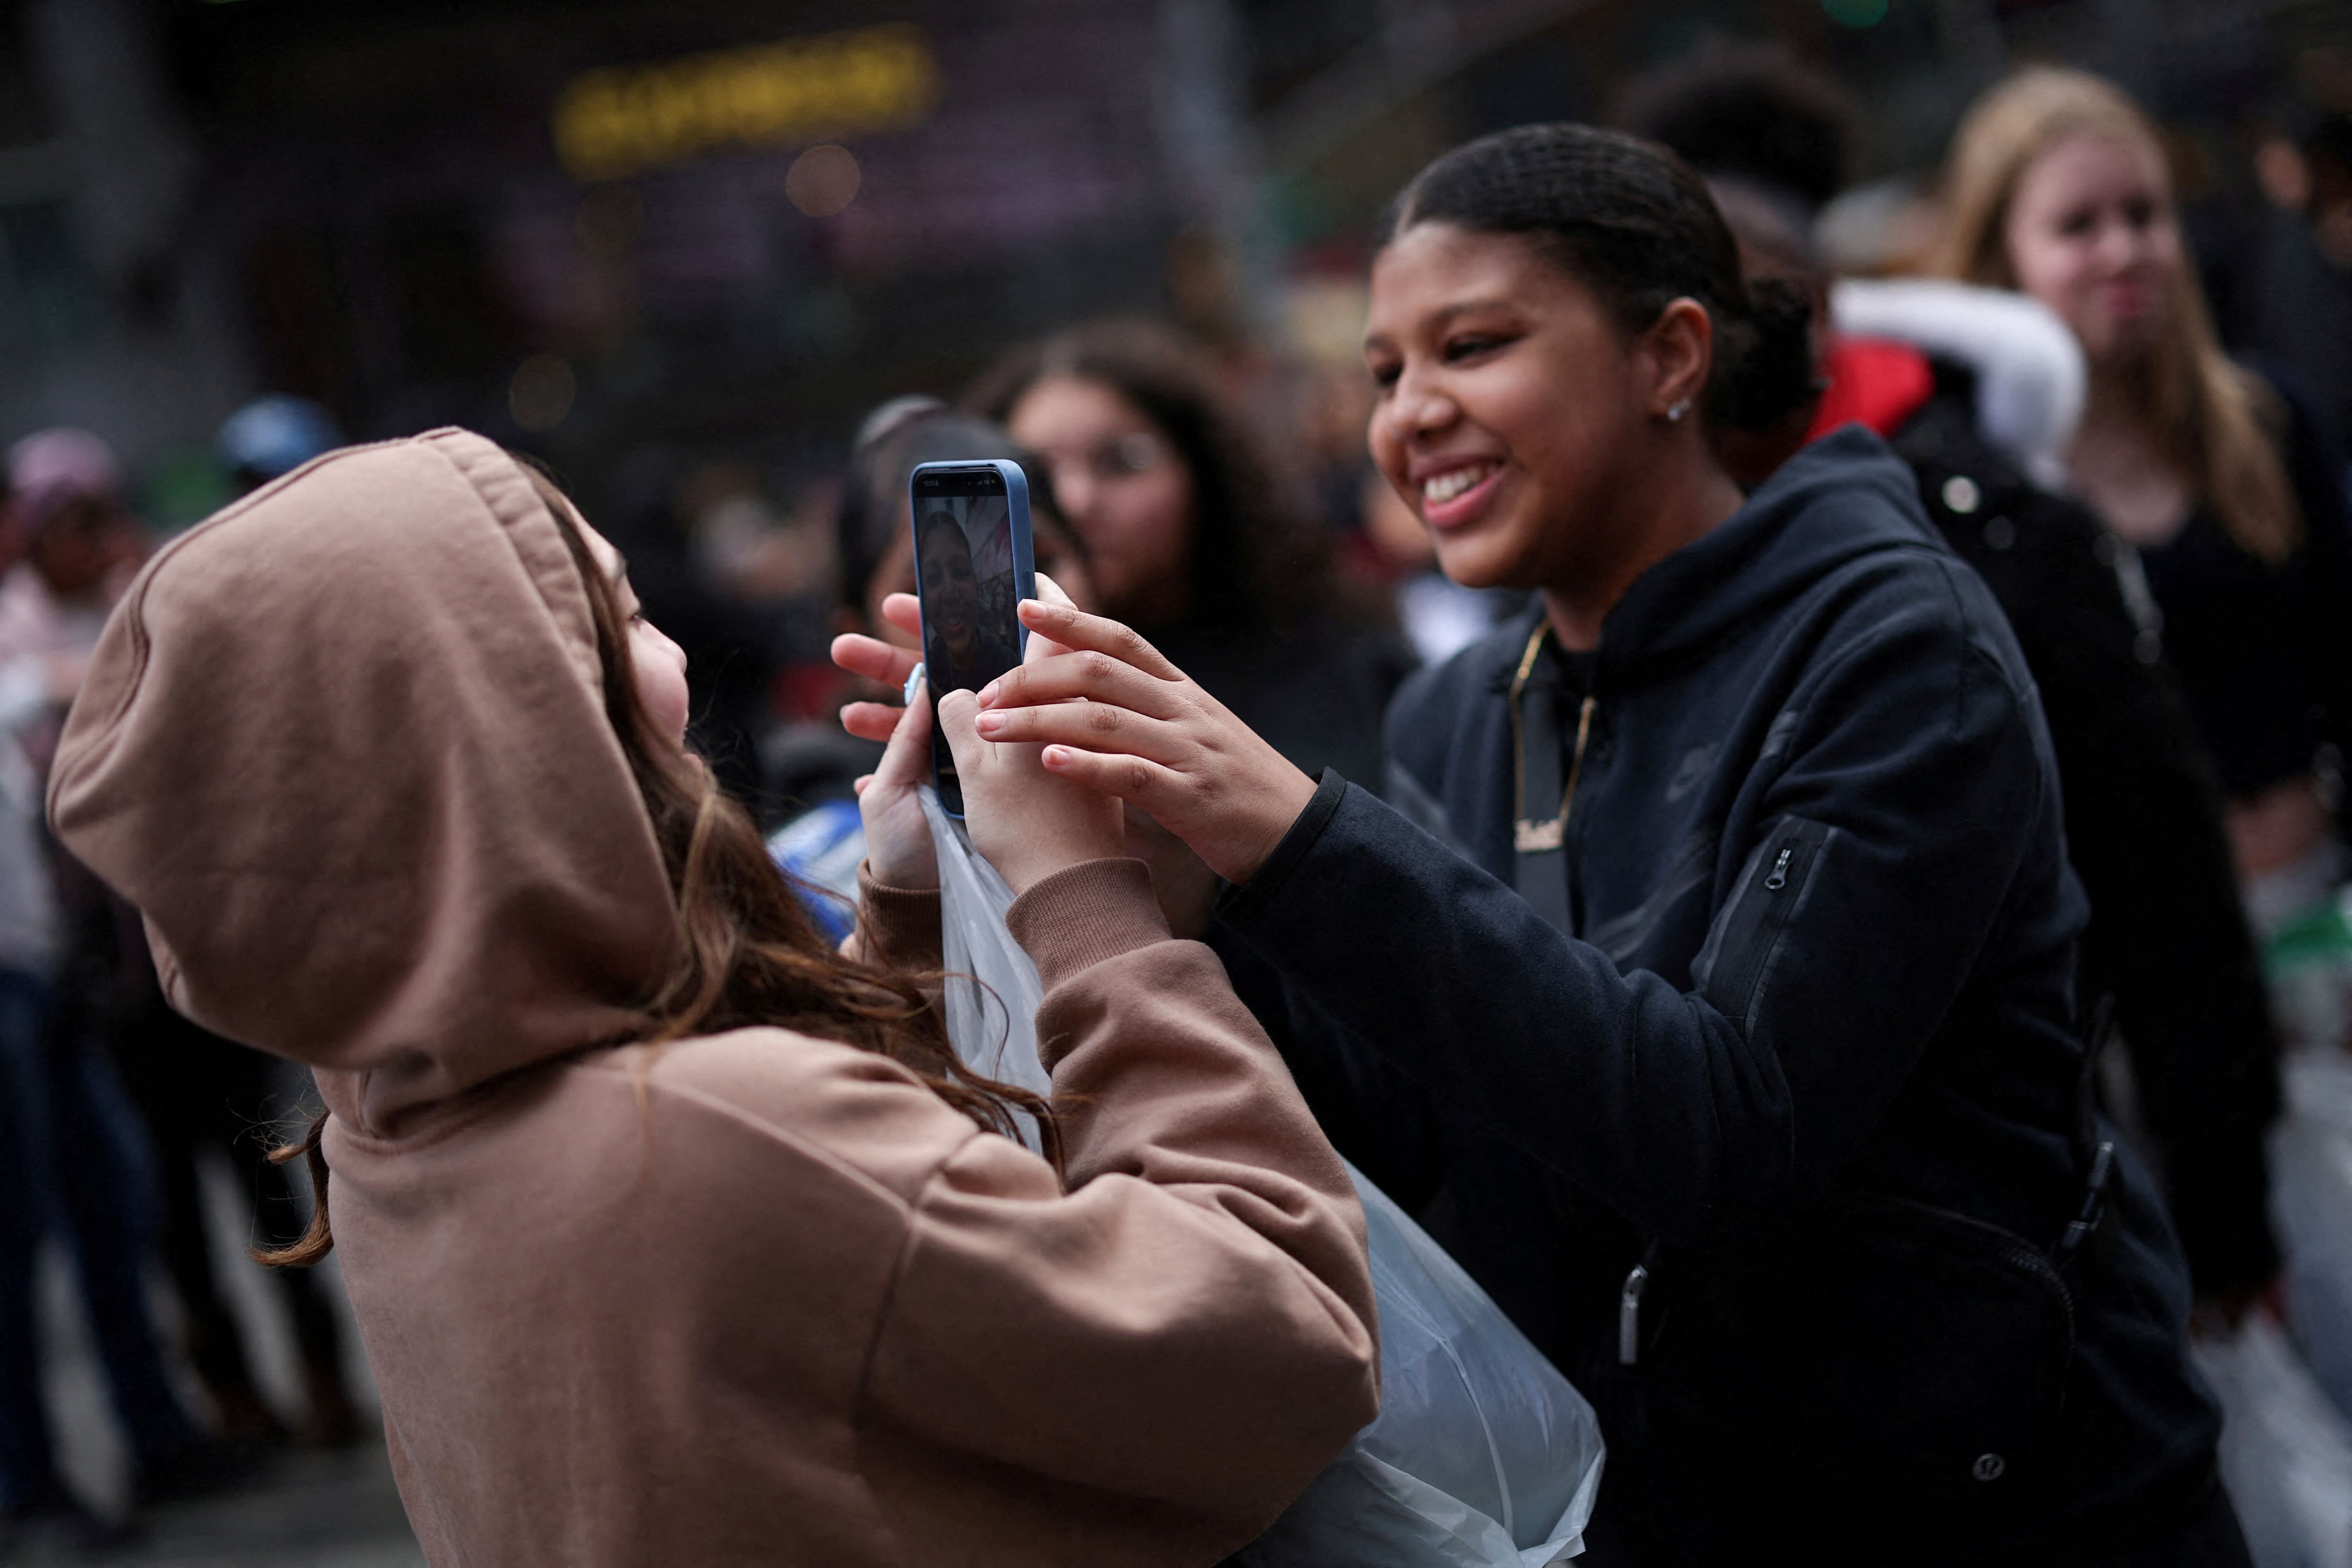 ¿Los adolescentes son una generación ansiosa? Llega el debate definitivo sobre móviles y jóvenes